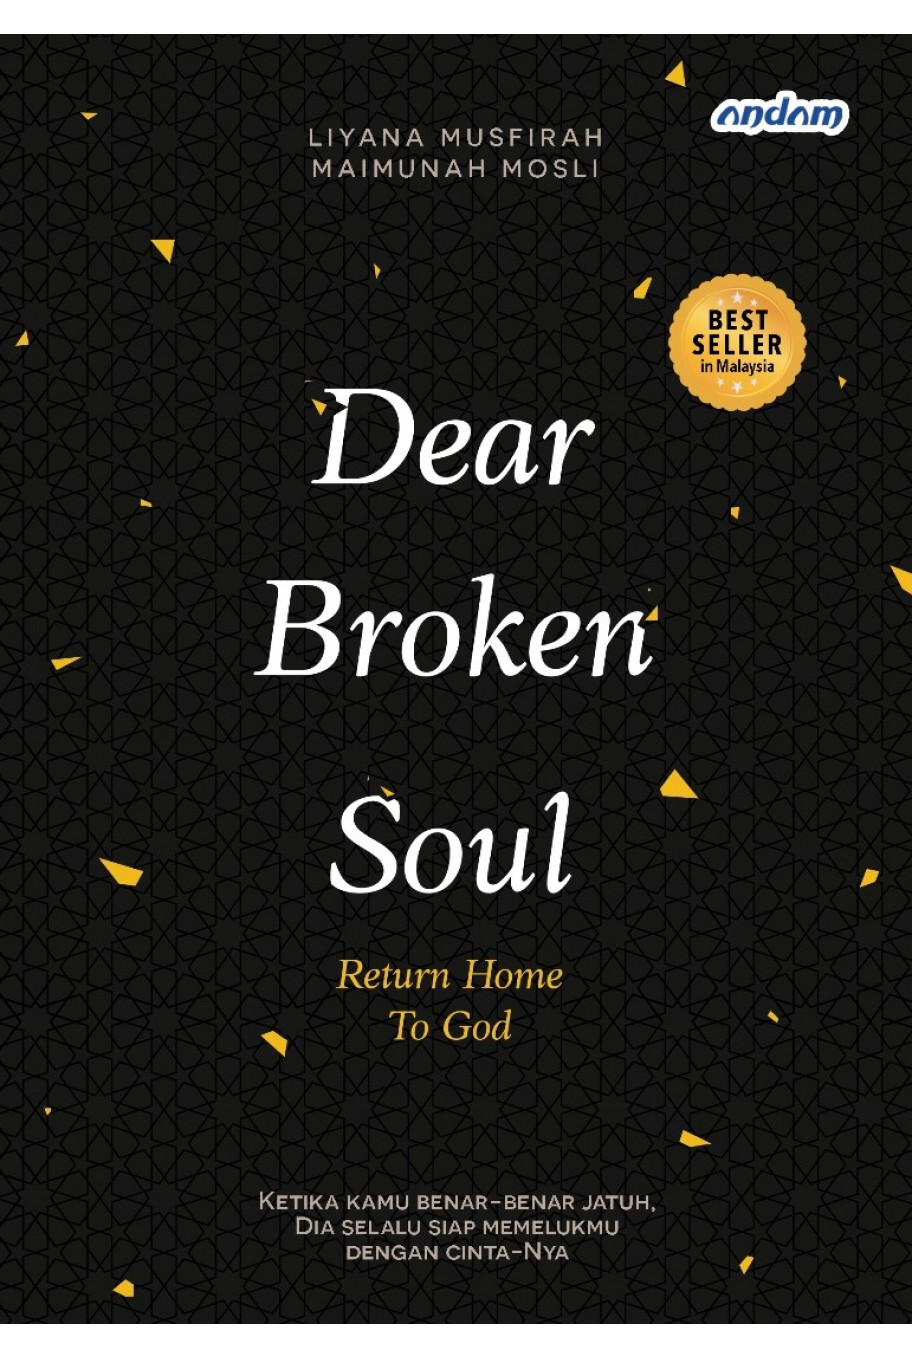 Dear Broken Soul